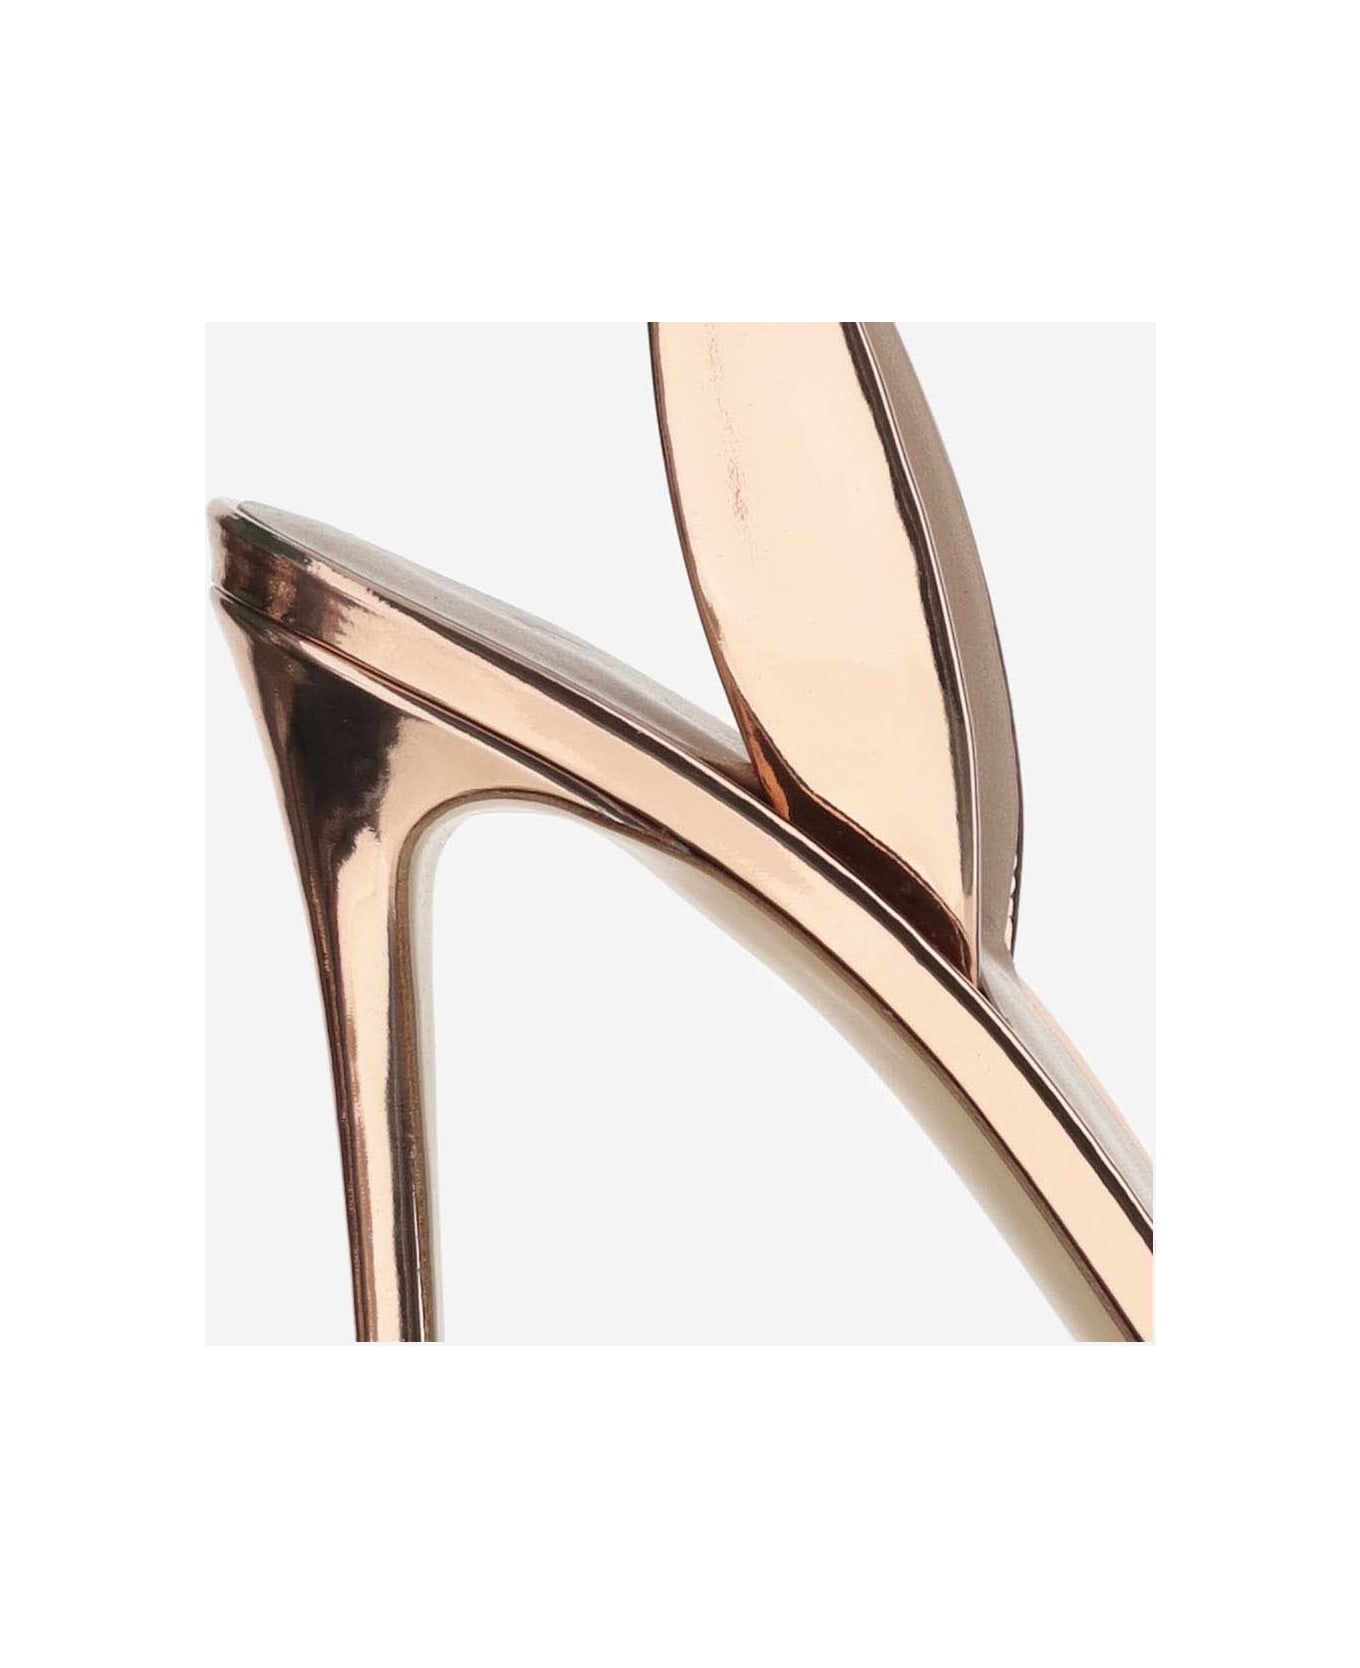 Giorgio Armani Laminated Leather Heeled Sandals - Golden サンダル